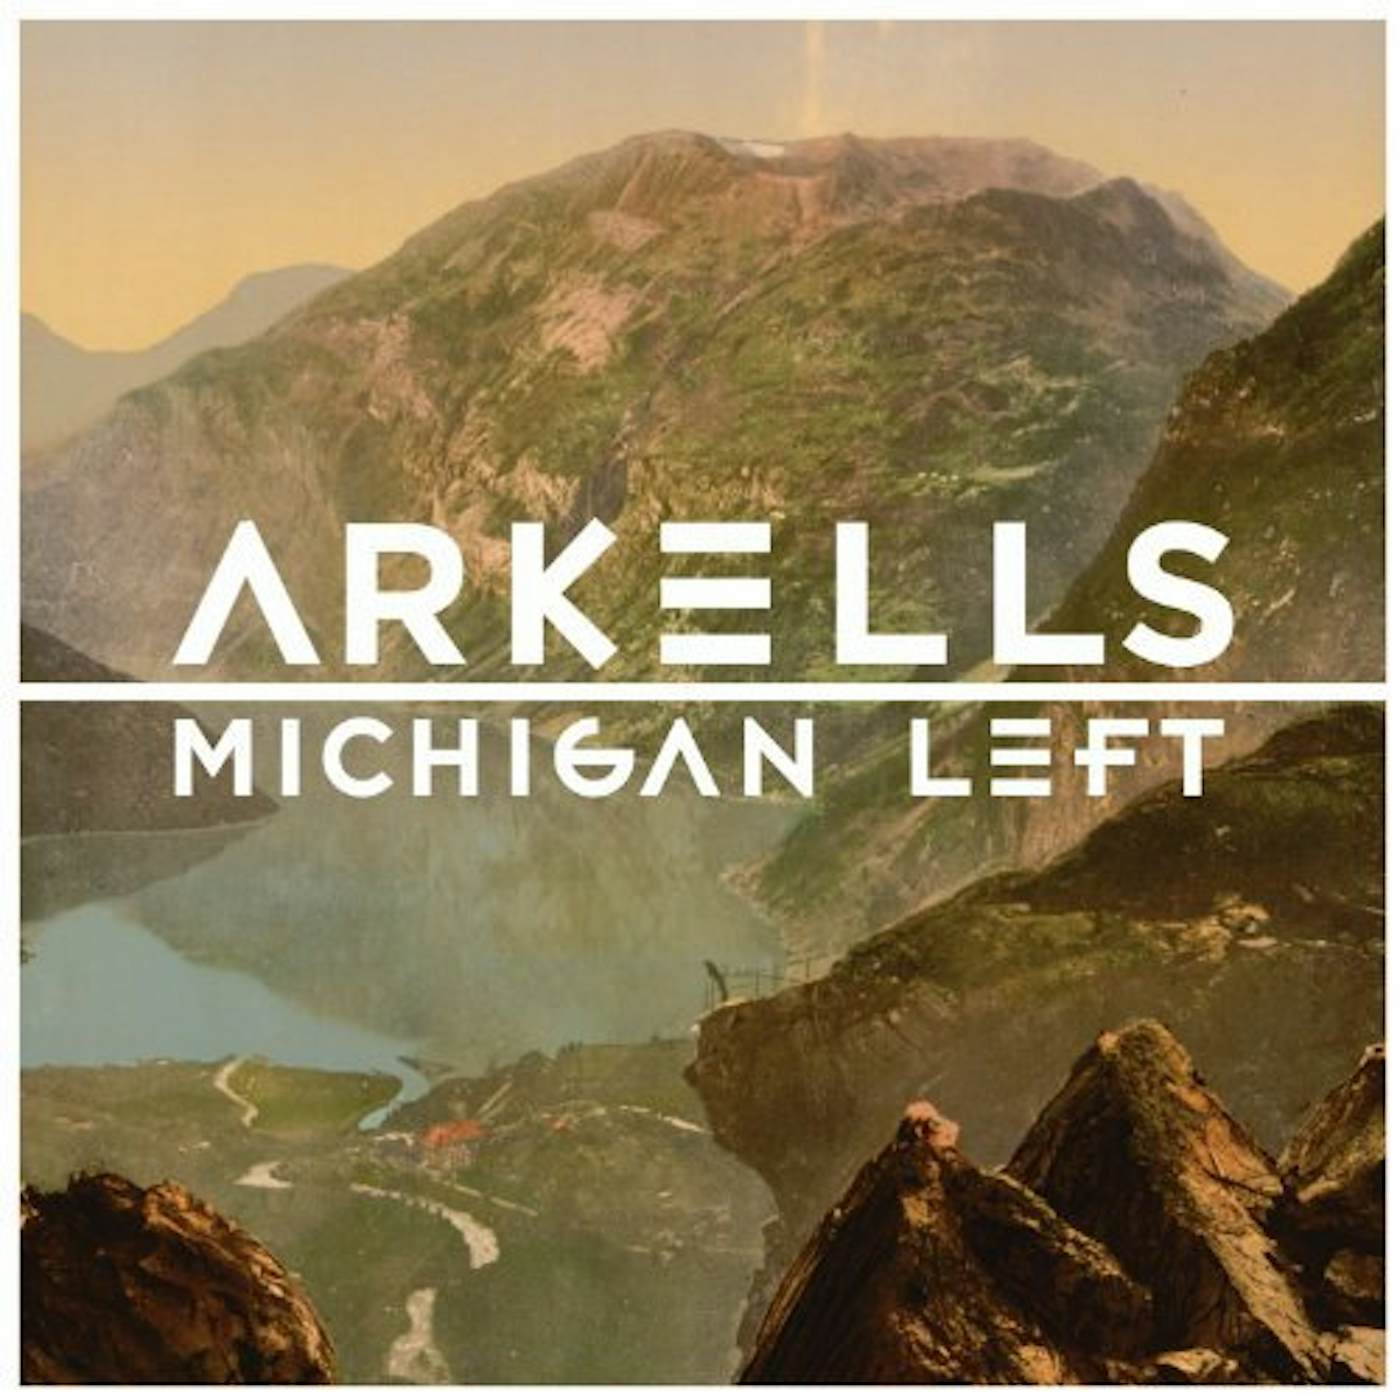 Arkells Michigan Left Vinyl Record